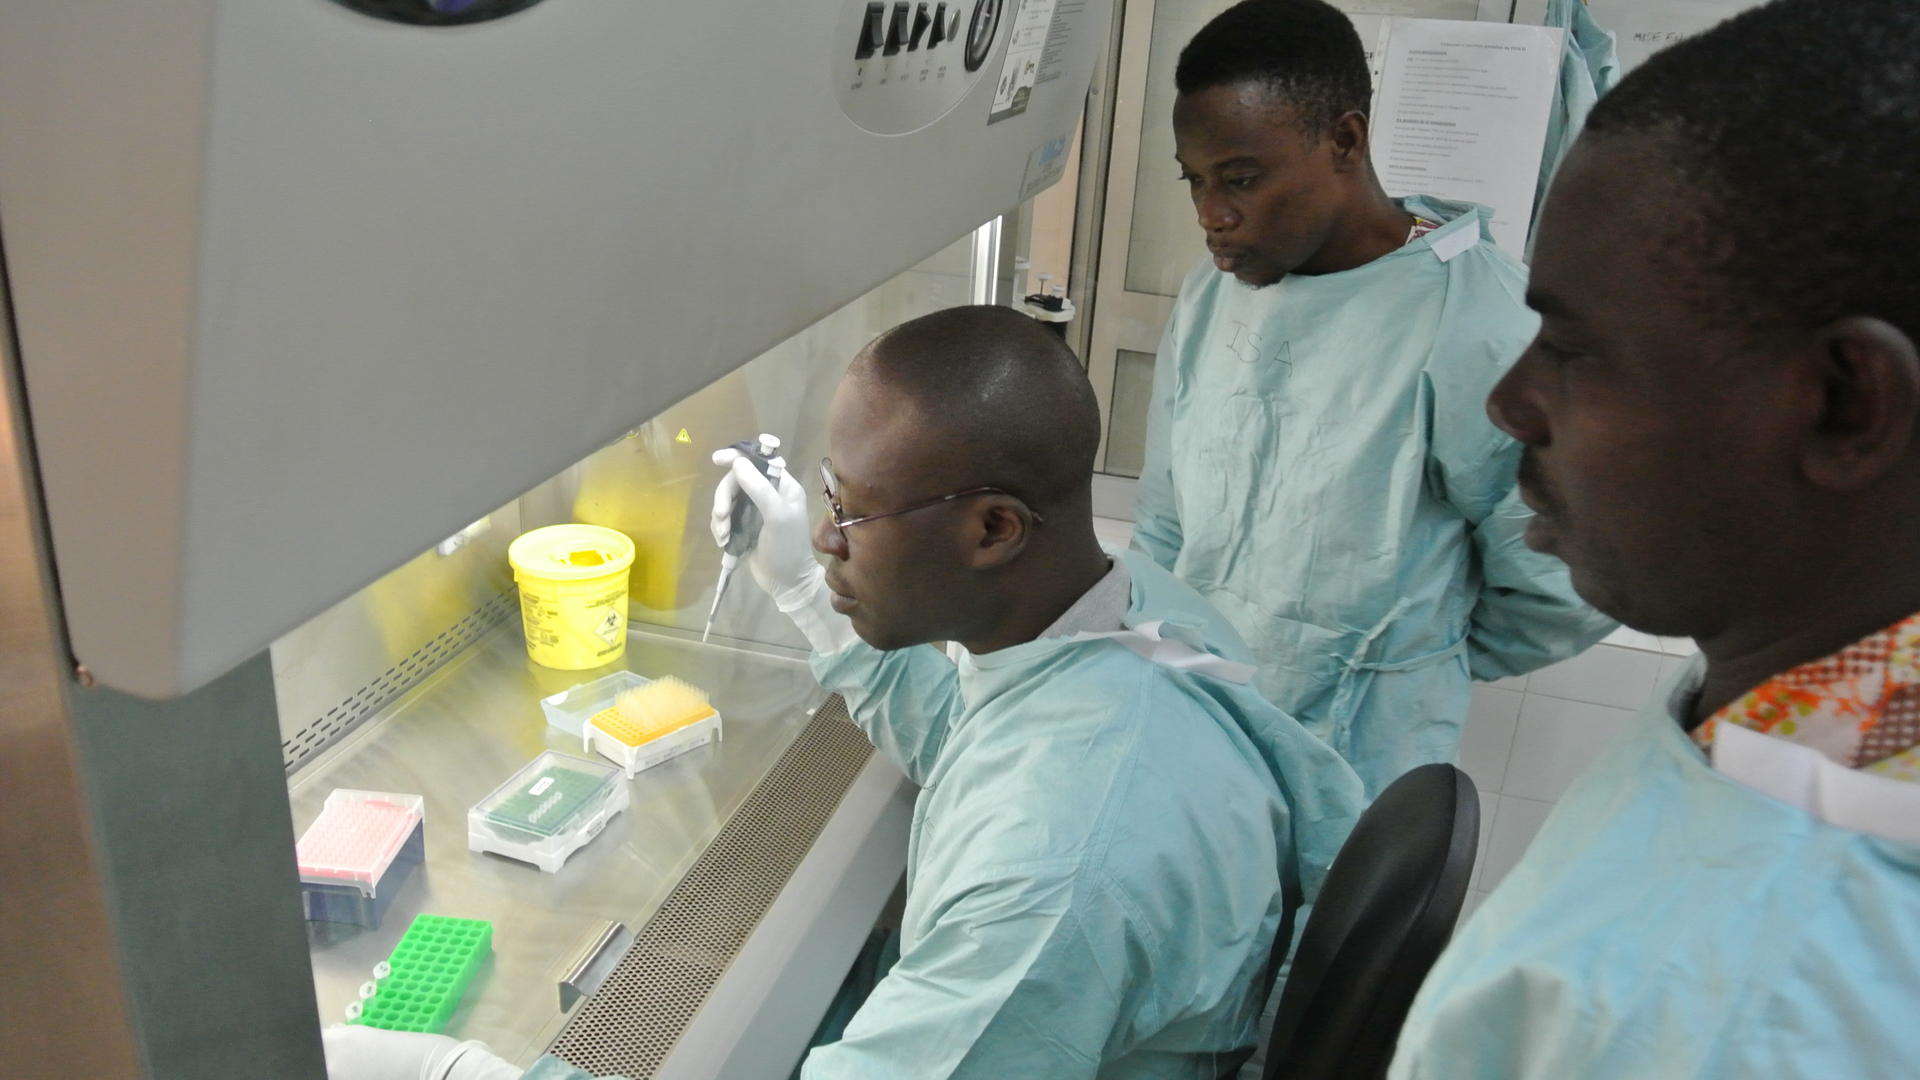 Einsatz der Schnell Einsetzbaren Expert*innengruppe Gesundheit (SEEG) in Togo, 2016: Lassafieber-Diagnostik